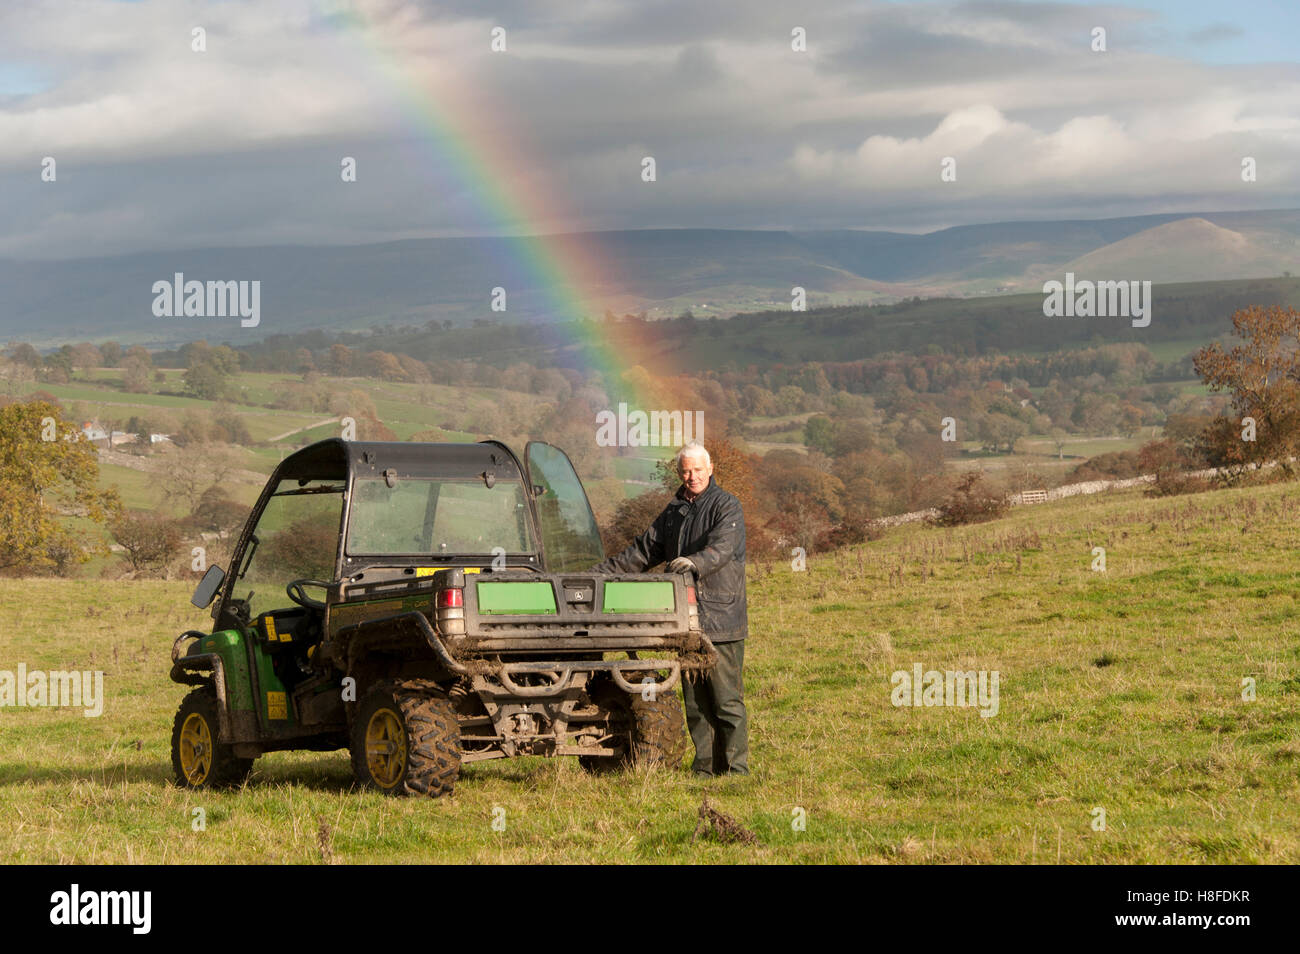 Agricoltore nelle aree montane pascolo, poggiando su una 4x4 veicolo agricolo, con un arcobaleno dietro di lui. Foto Stock